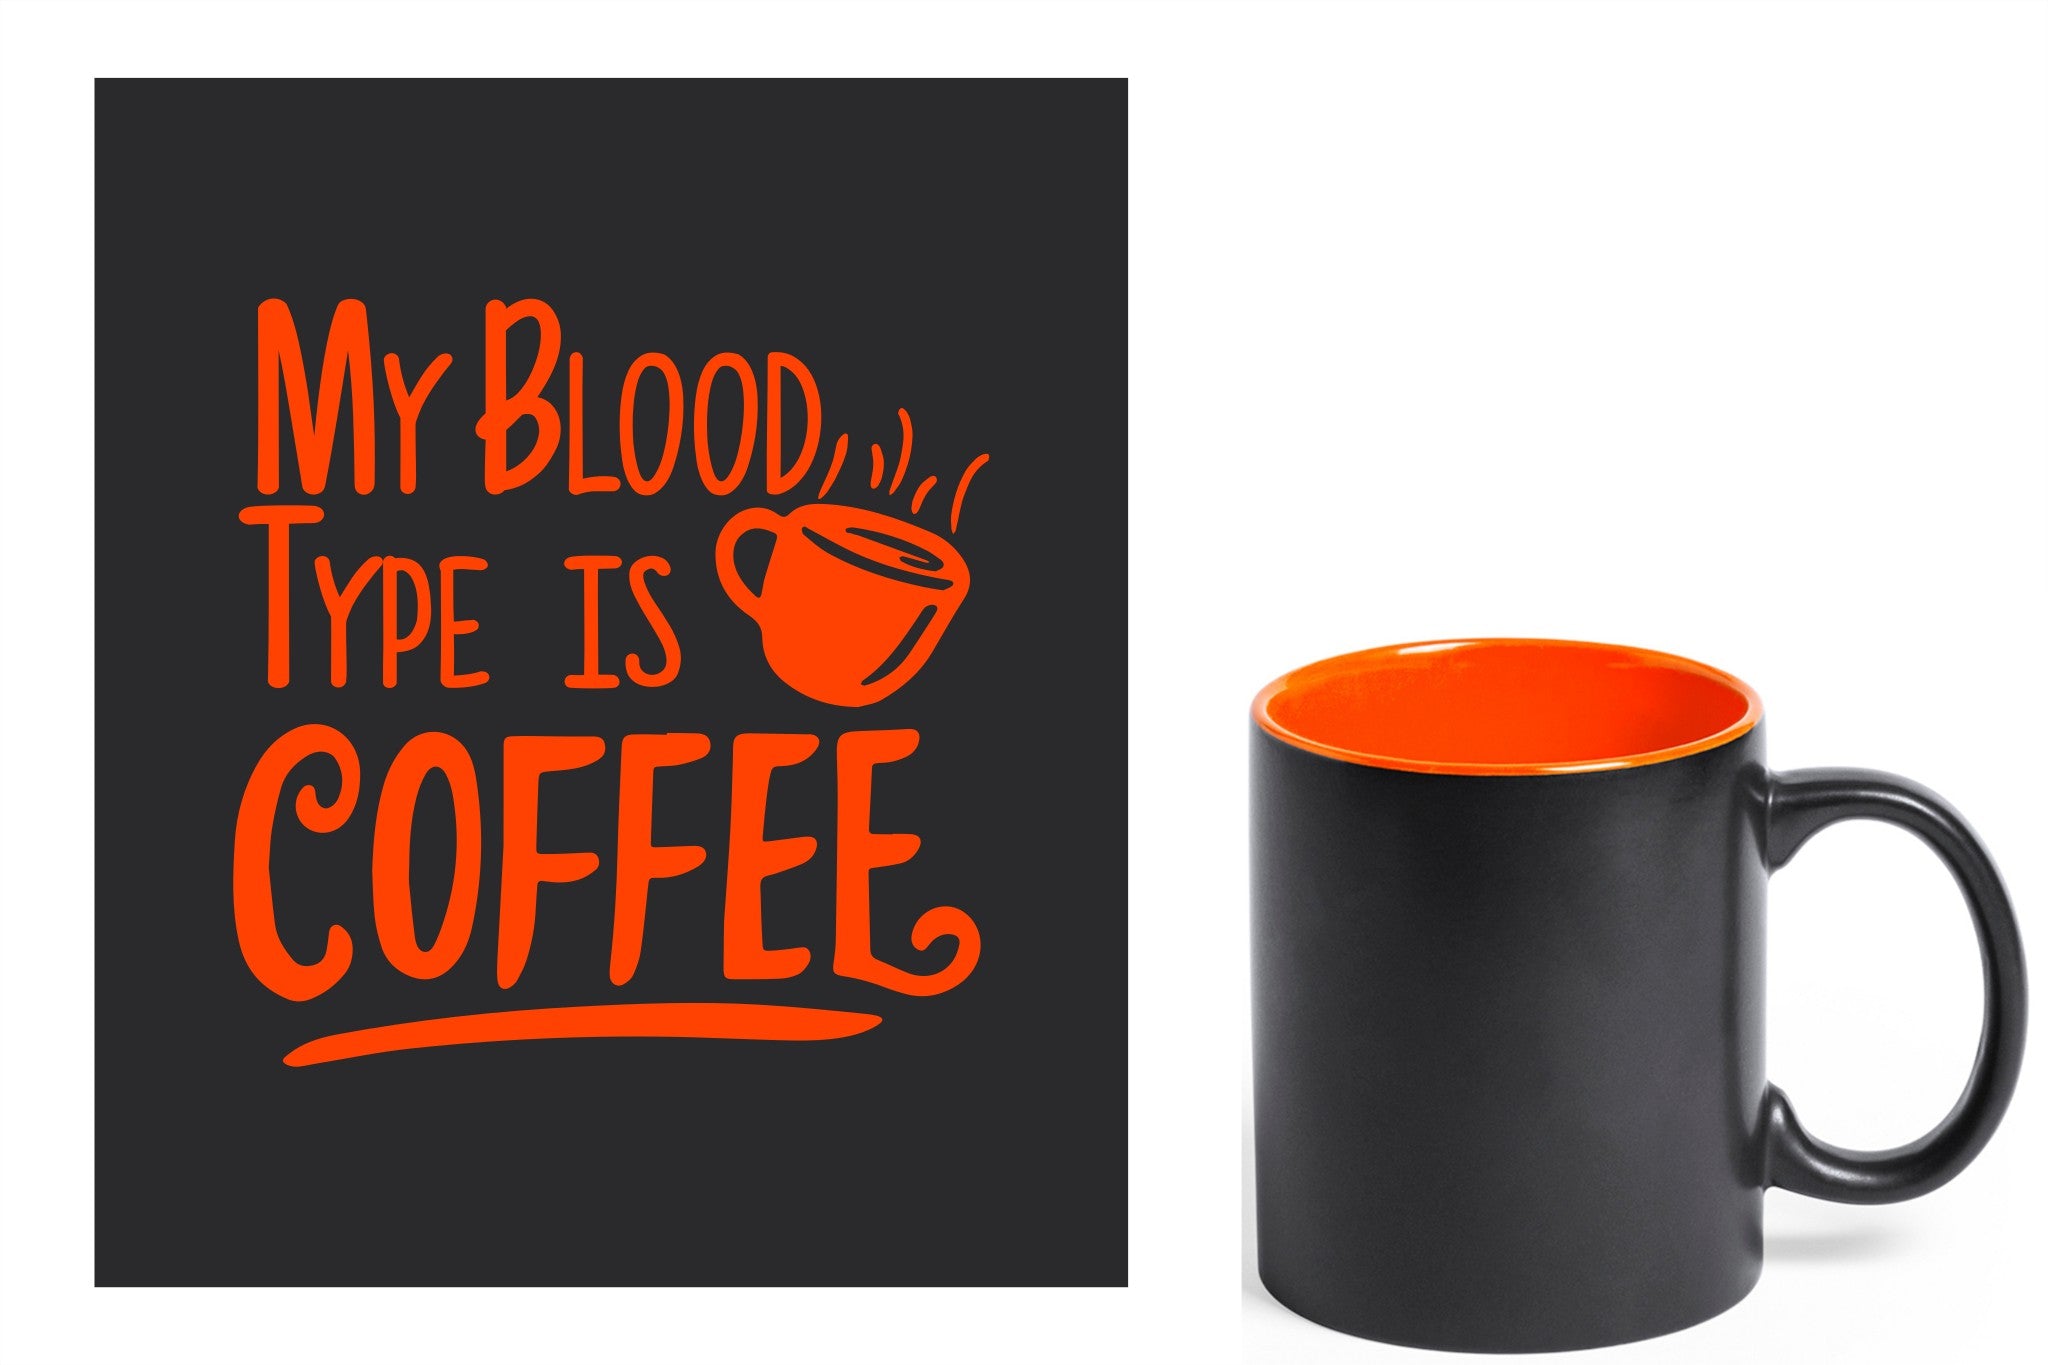 zwarte keramische mok met oranje gravure  'My blood type is coffee'.